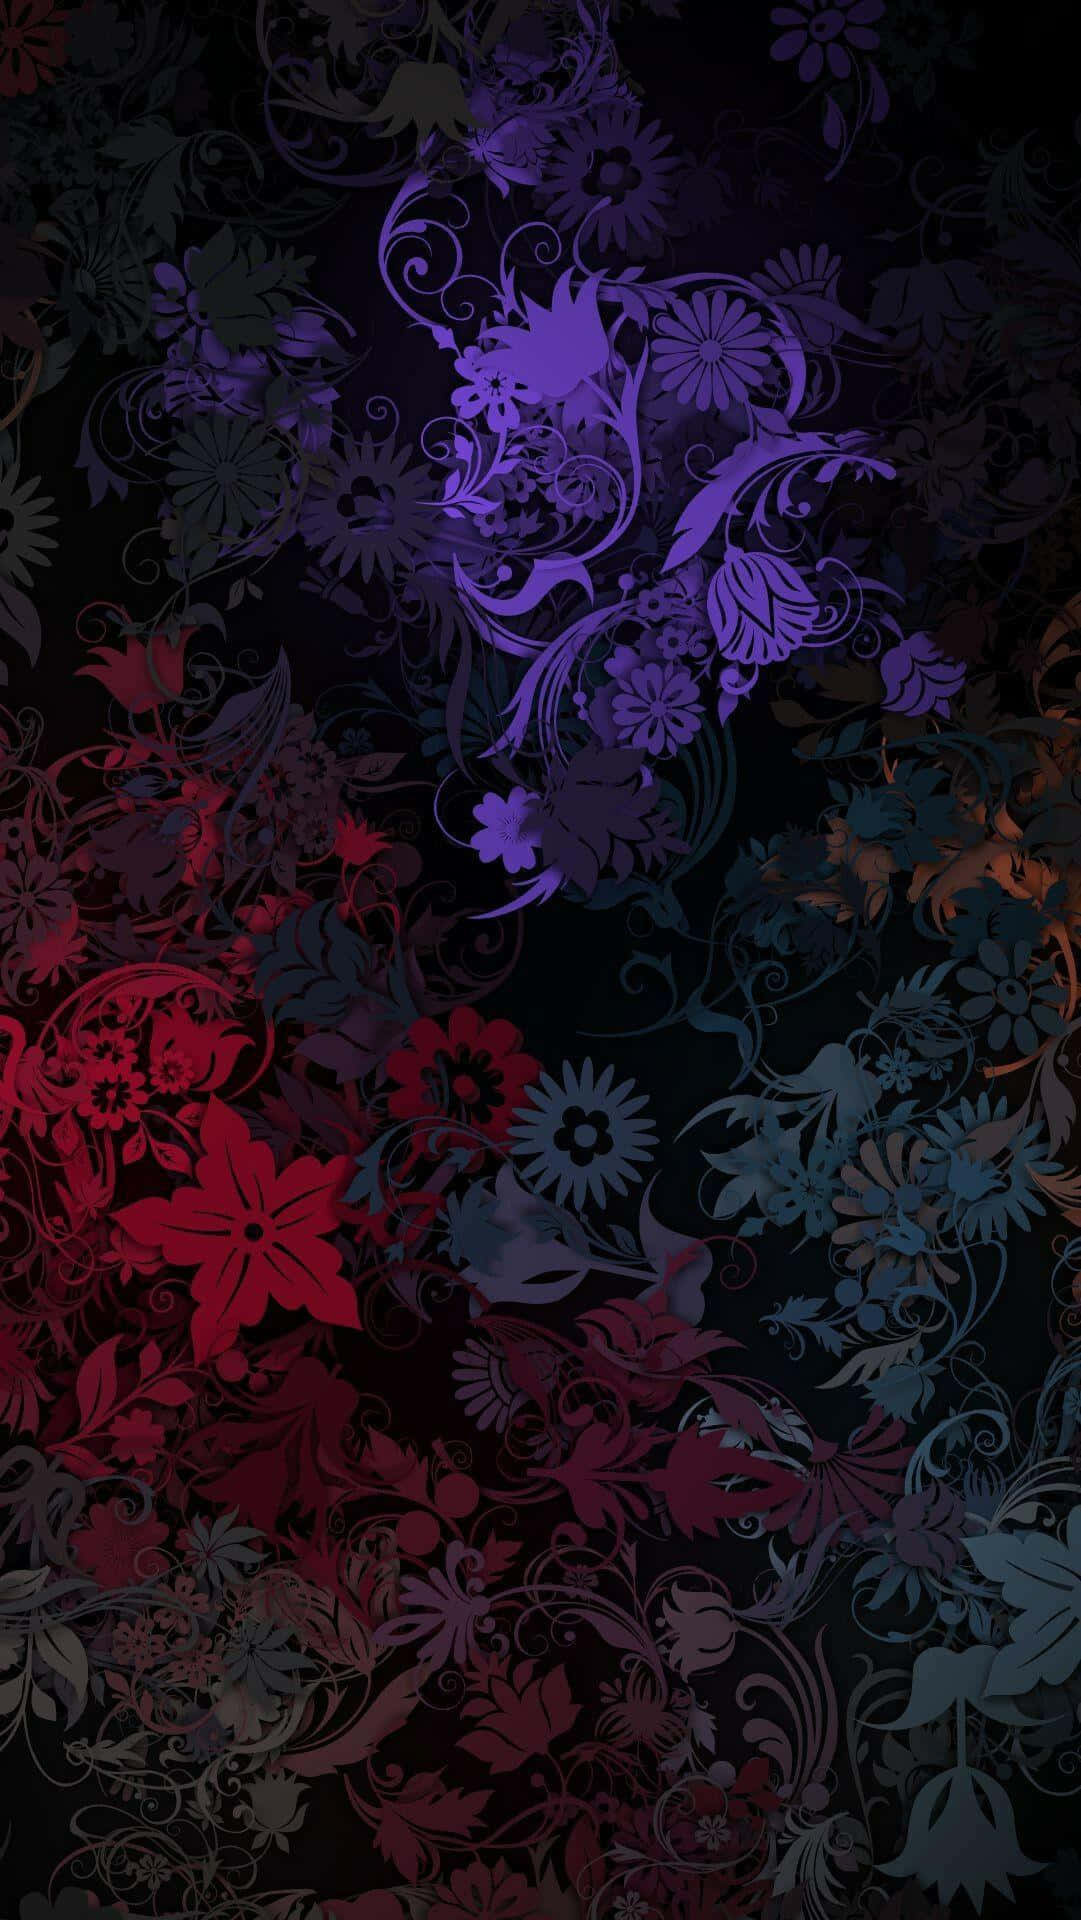 Mysterious Beauty Of A Dark Flower Wallpaper